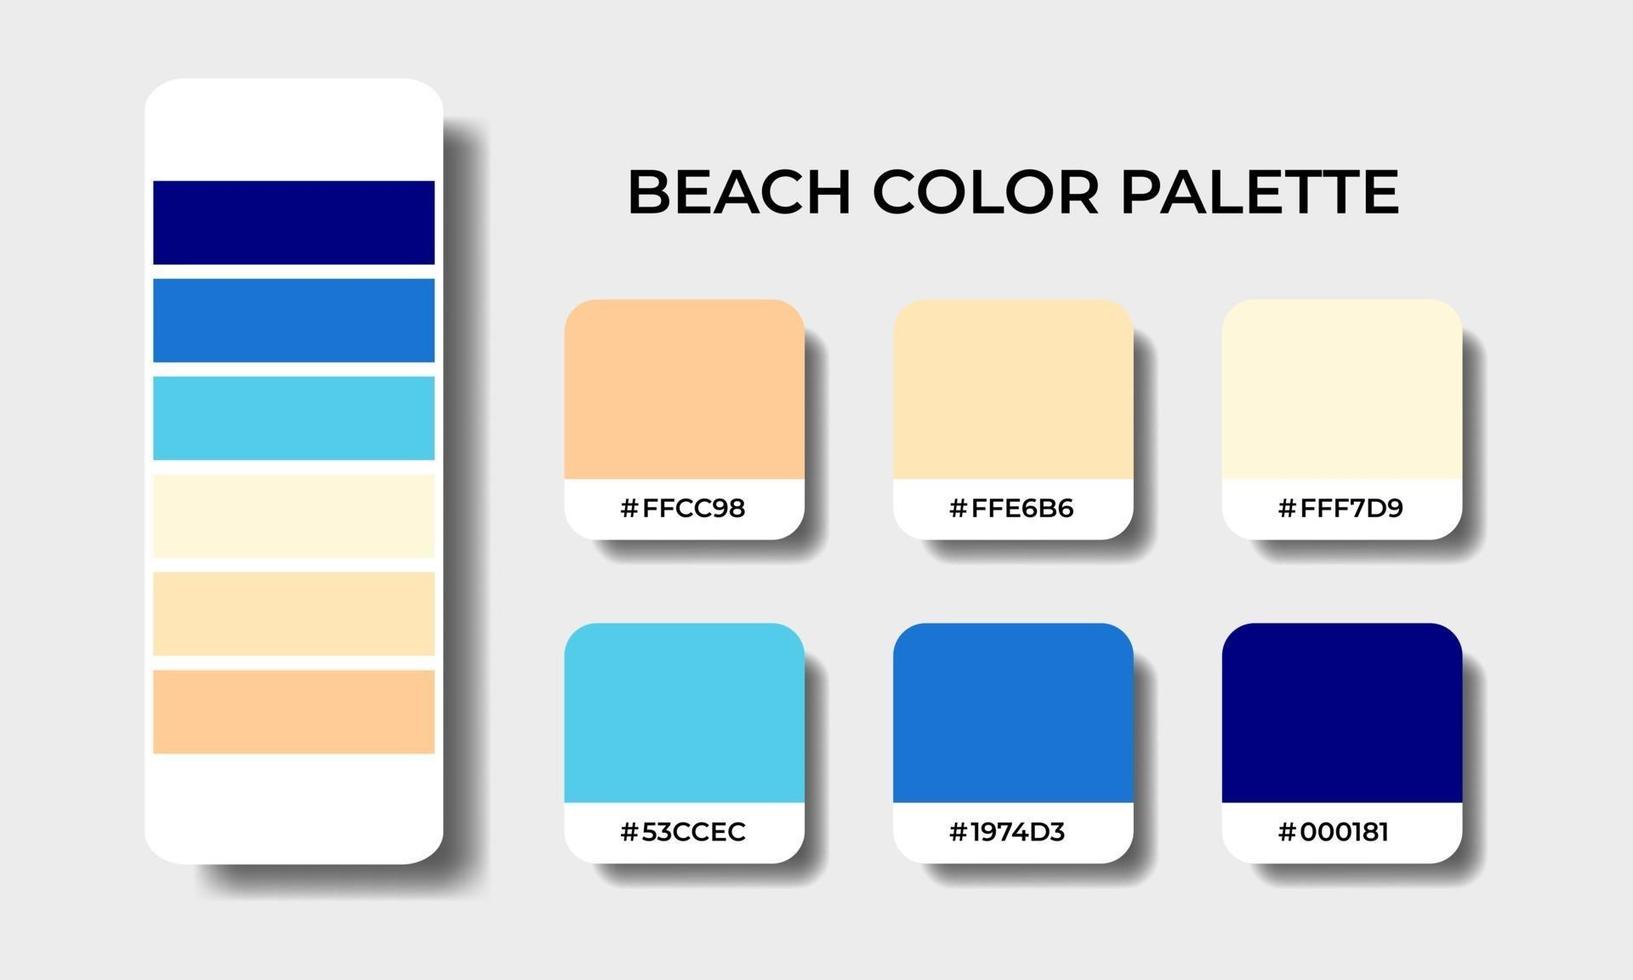 ensembles d'échantillons de palettes de couleurs de plage vecteur